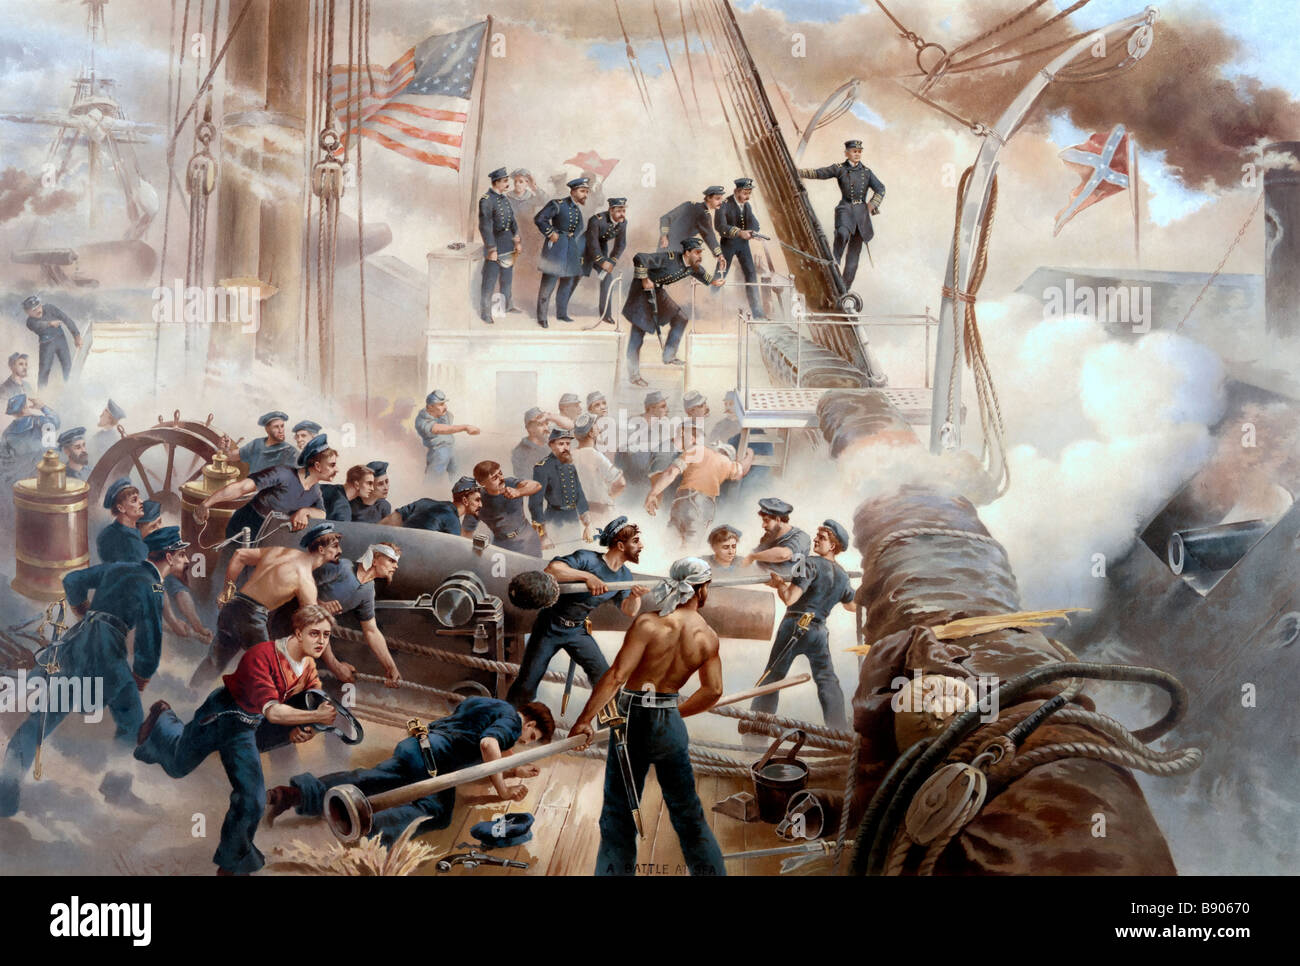 La guerre sur mer - bataille navale entre l'Union européenne et les Forces navales des Confédérés durant la guerre civile américaine Banque D'Images